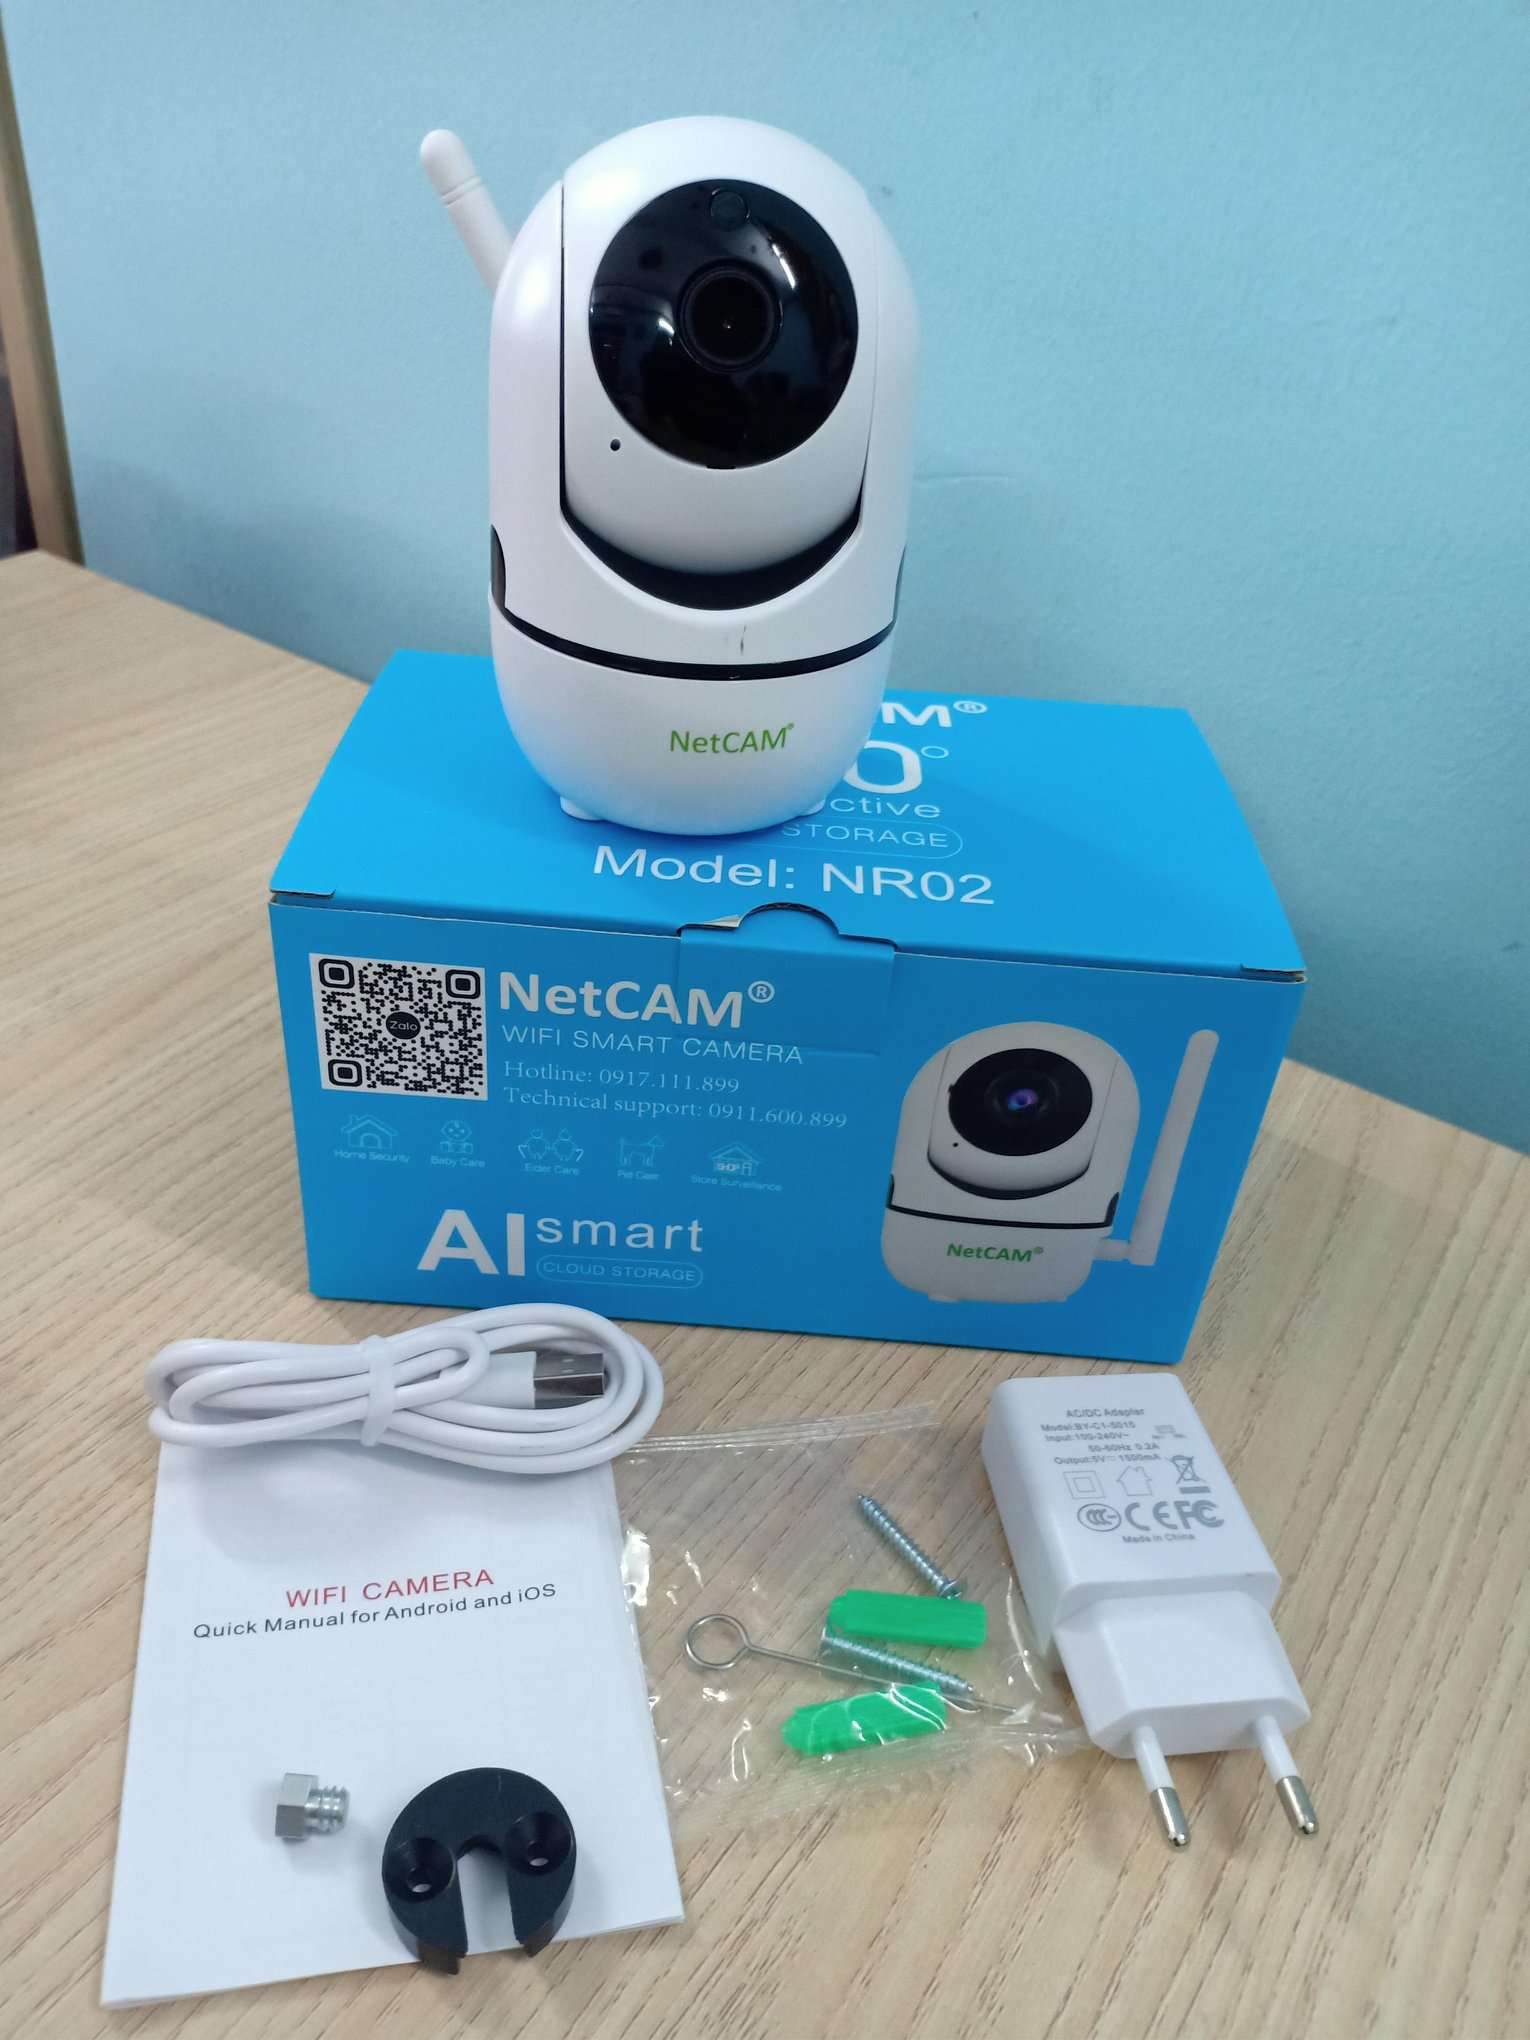 Camera IP Wifi NetCAM NR02 3.0MP - Hãng phân phối chính thức